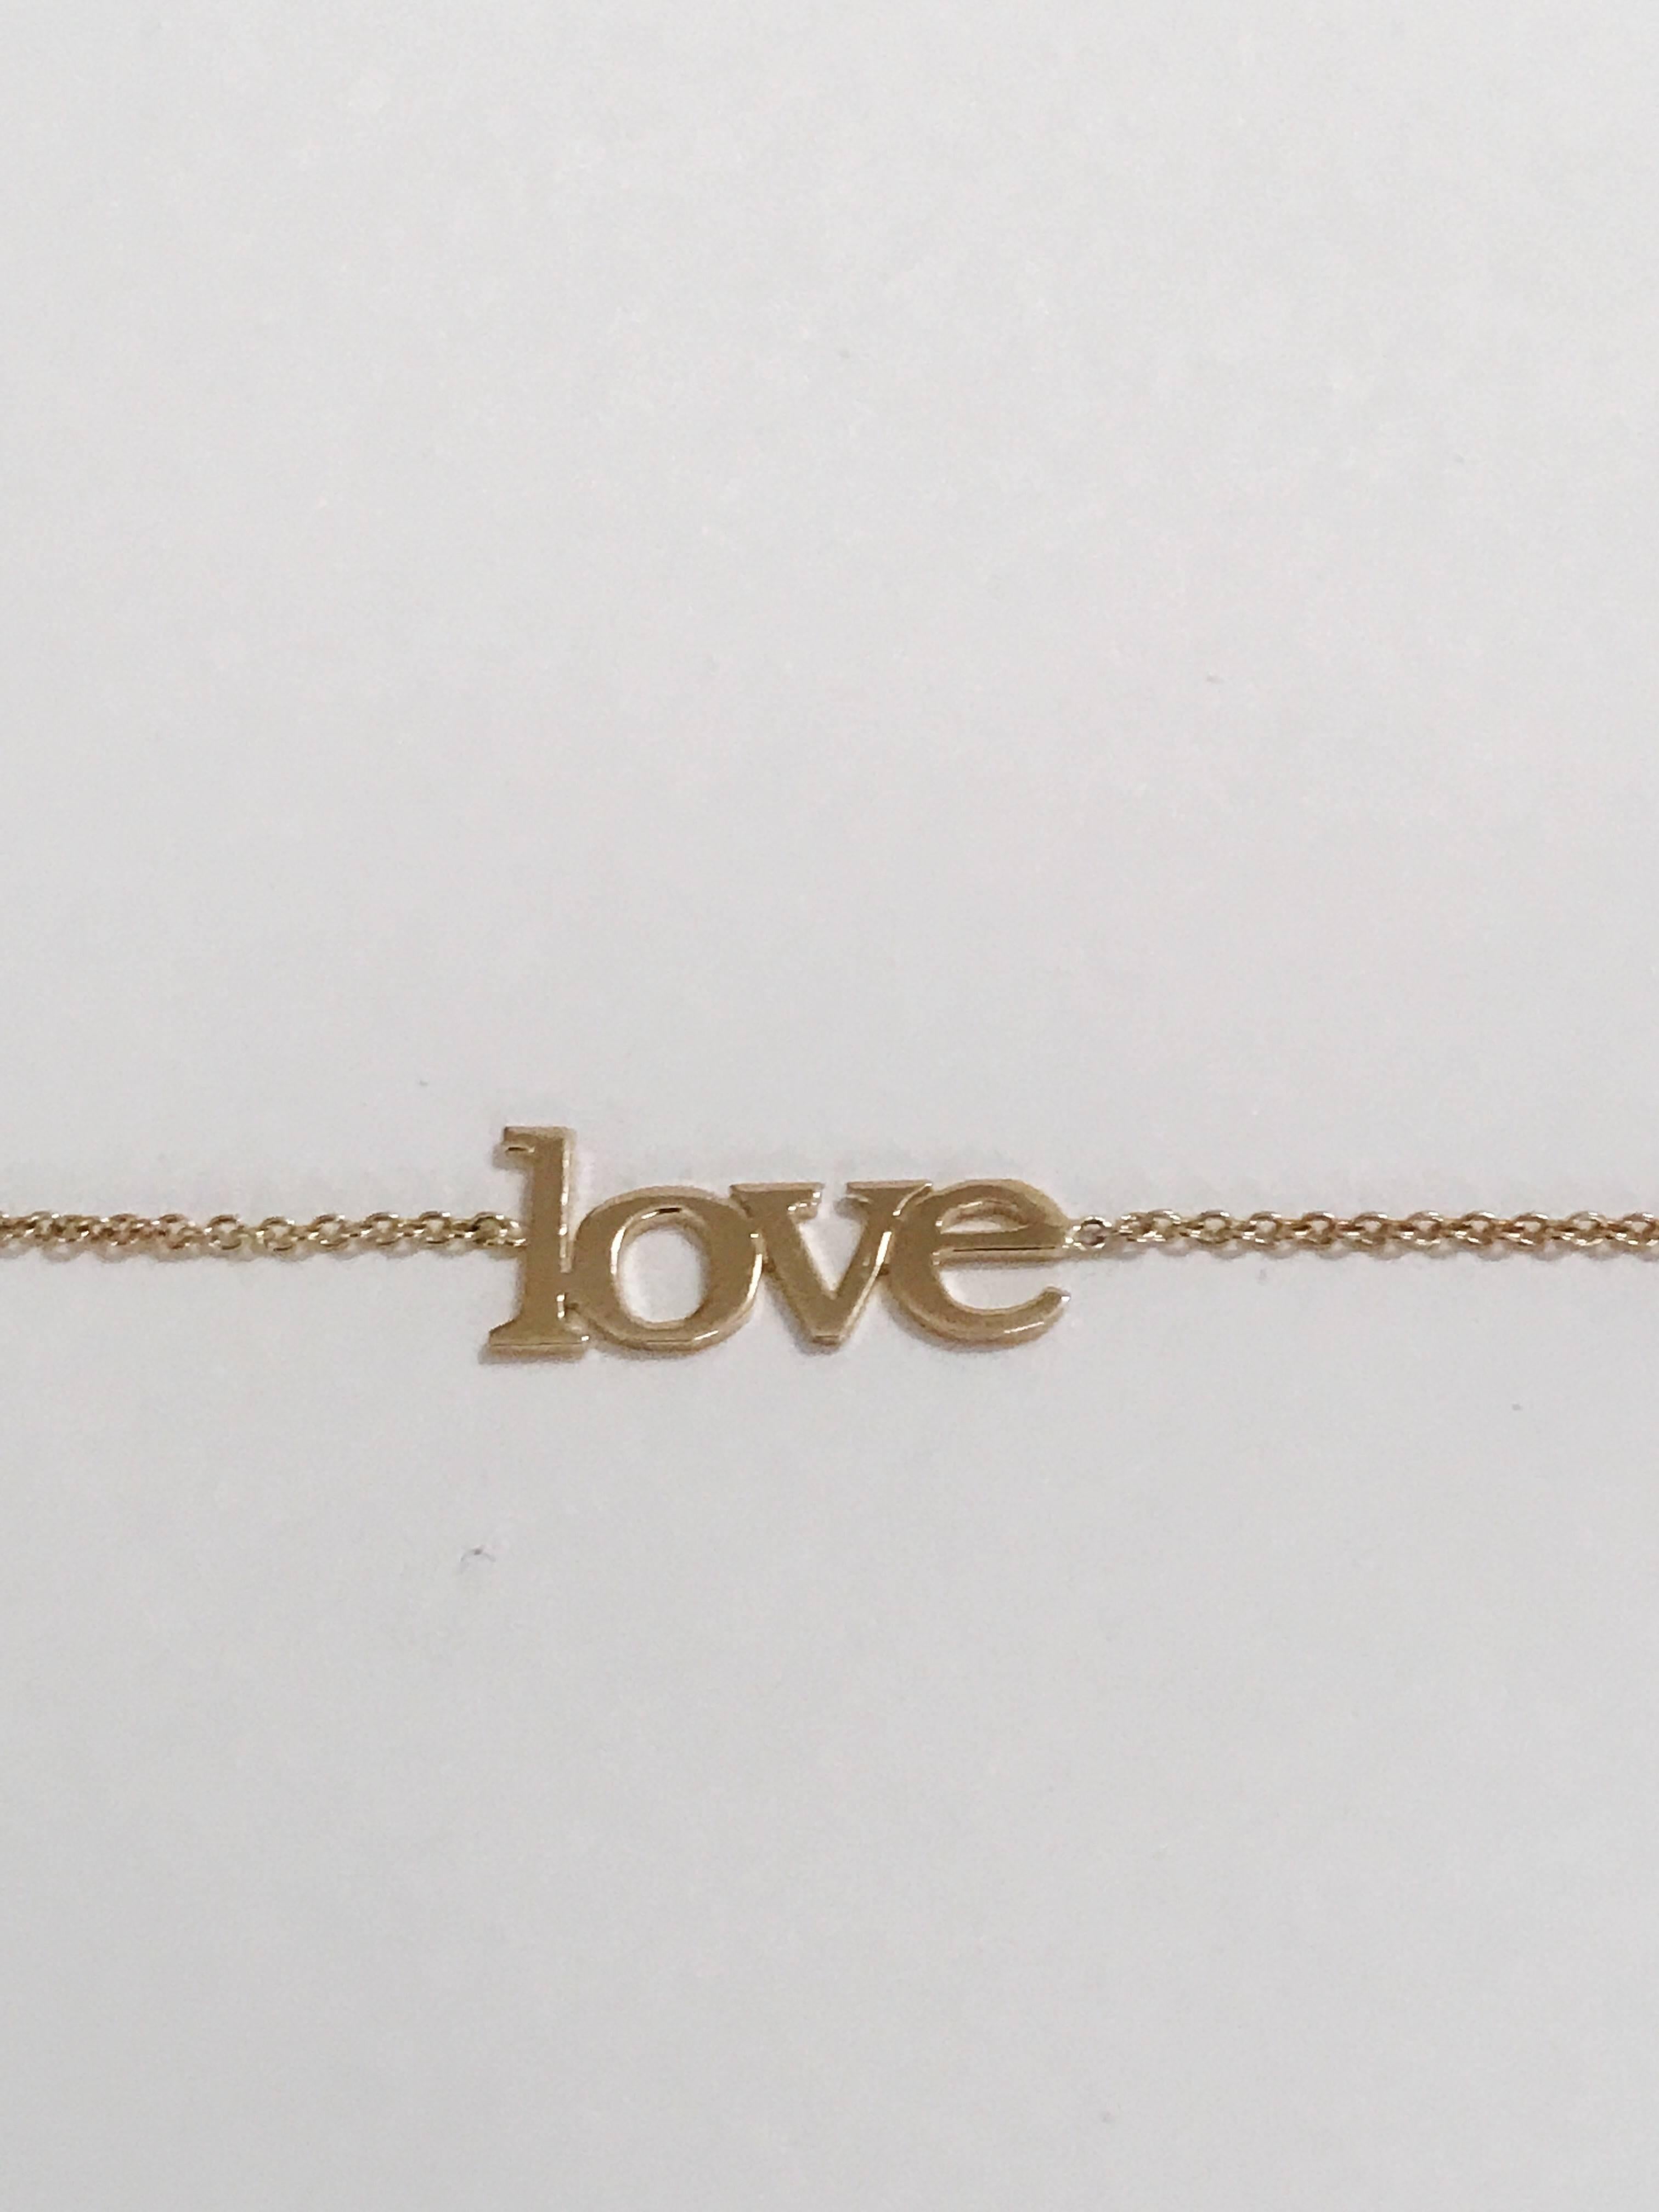 le grand bracelet d'amour en or jaune de 14 carats mesure 7,5 pouces de long. 

La hauteur du 